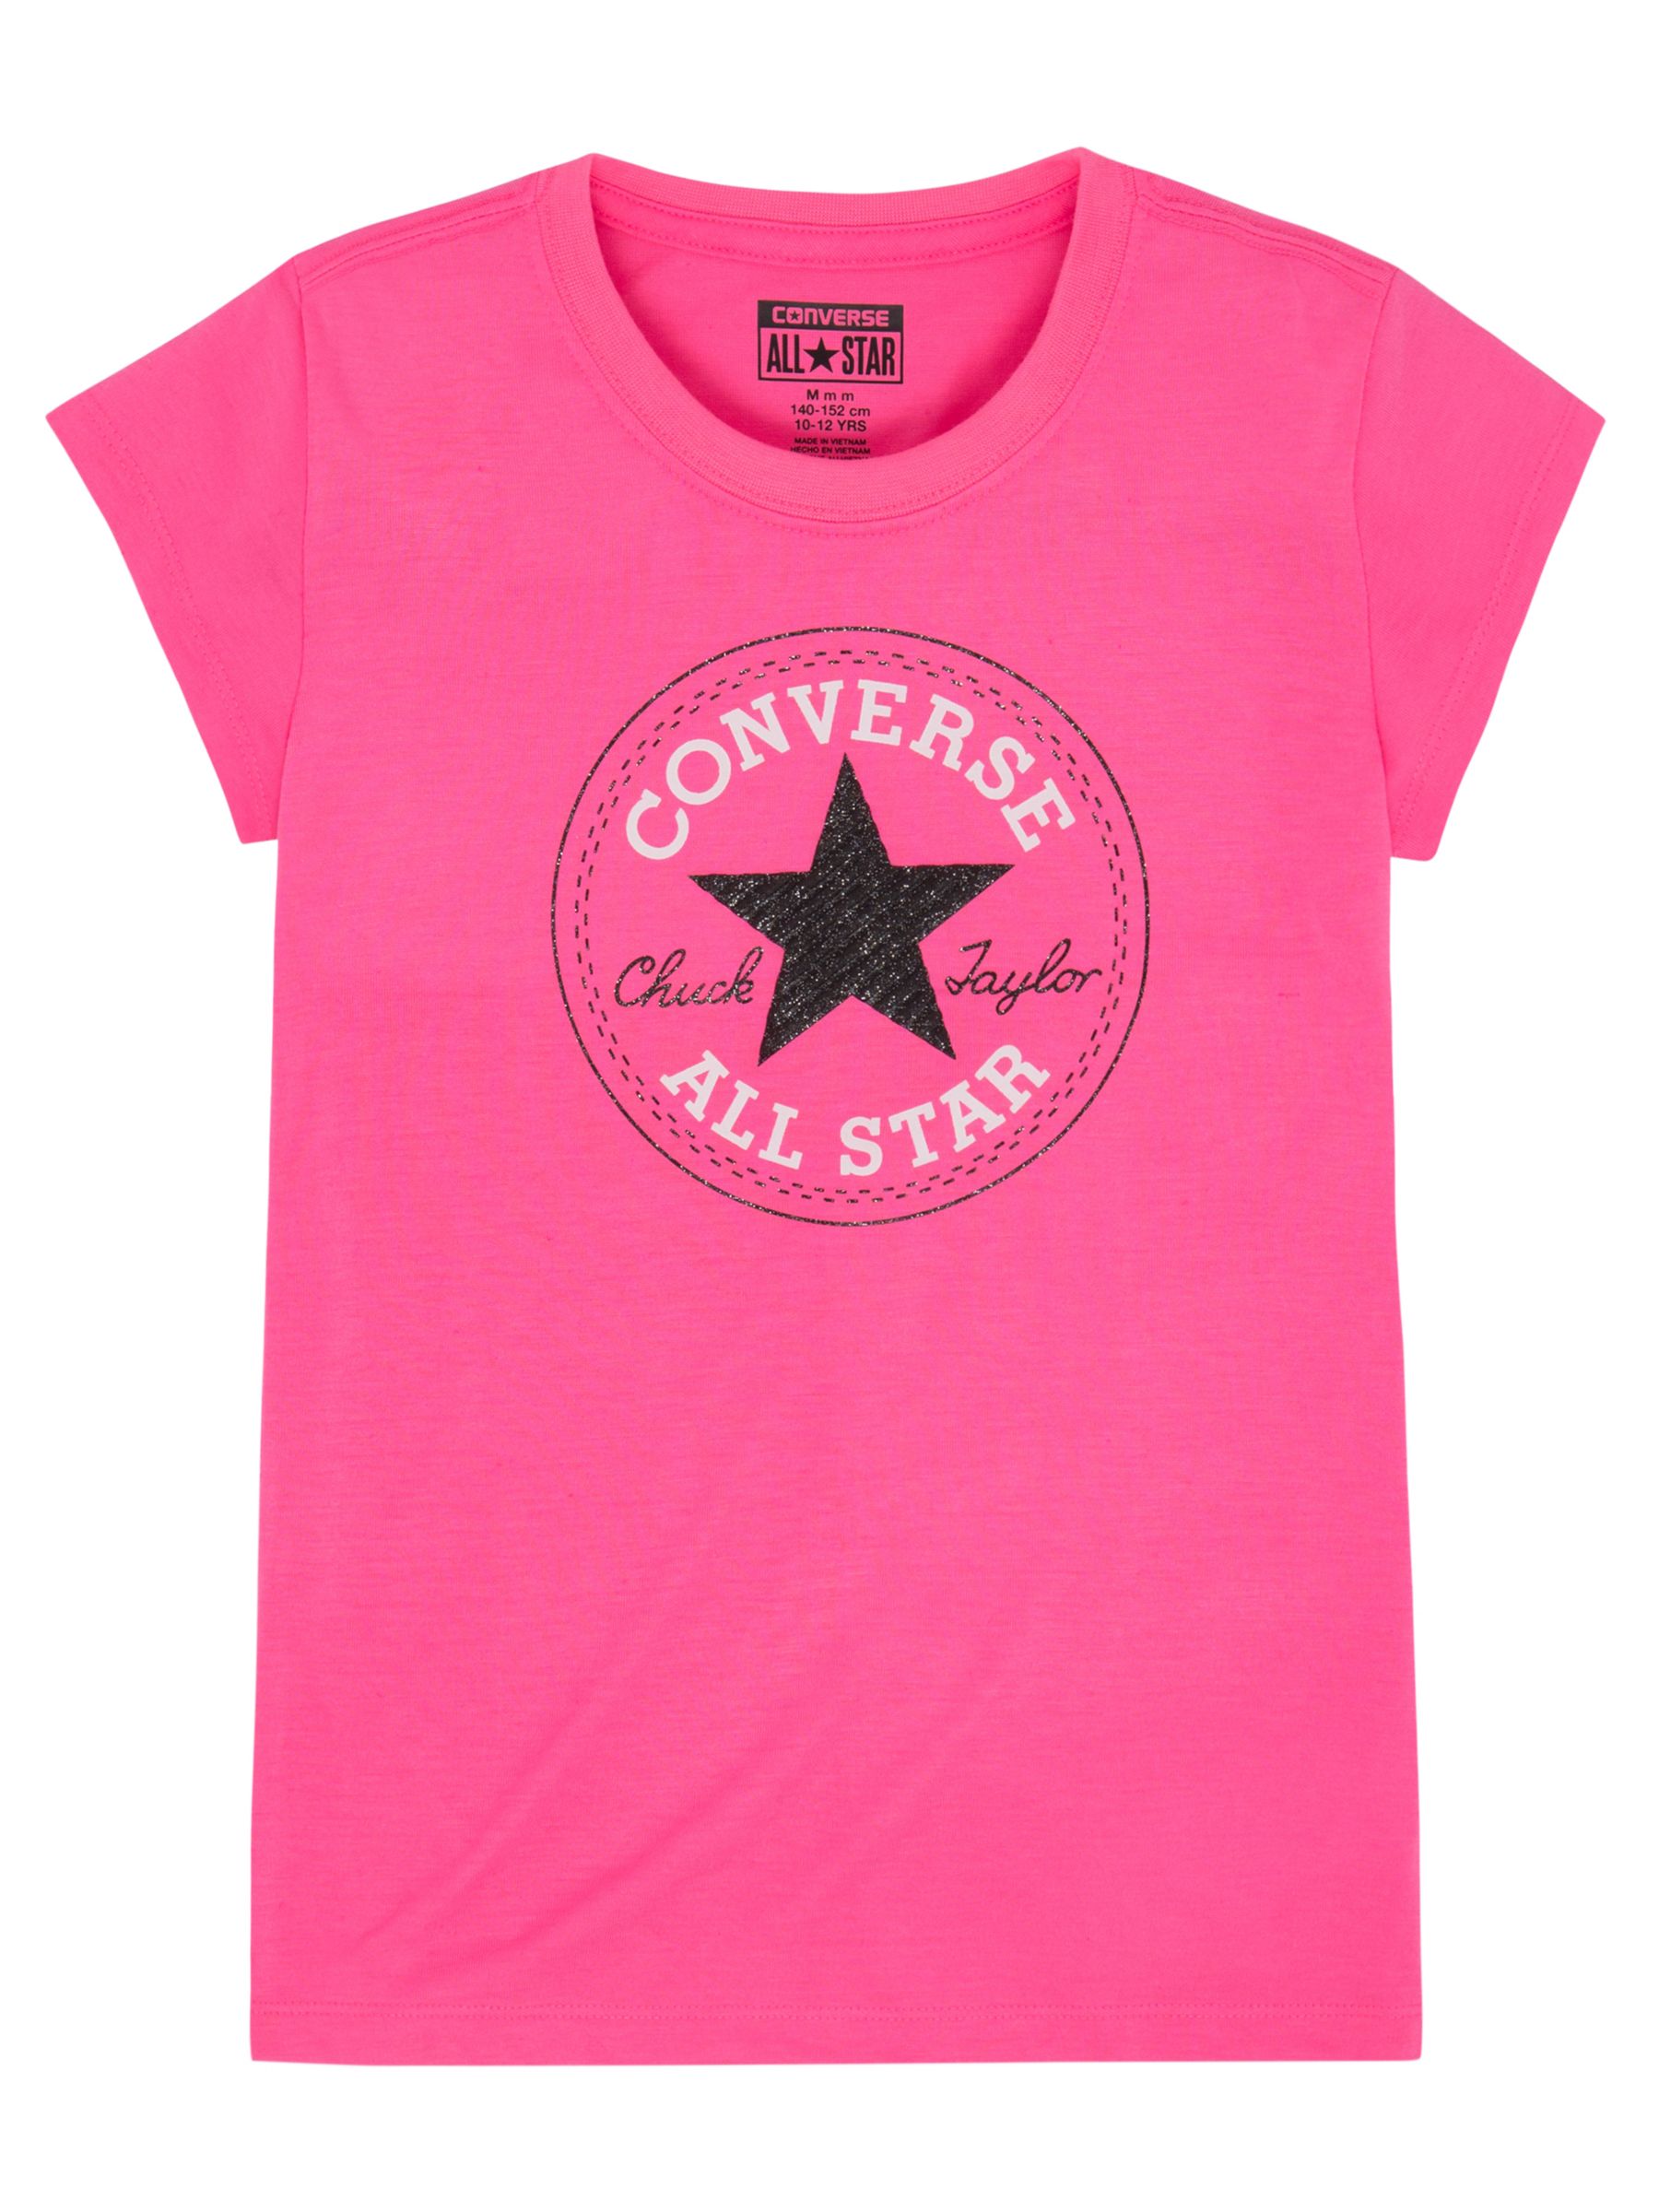 converse all star t shirt pink